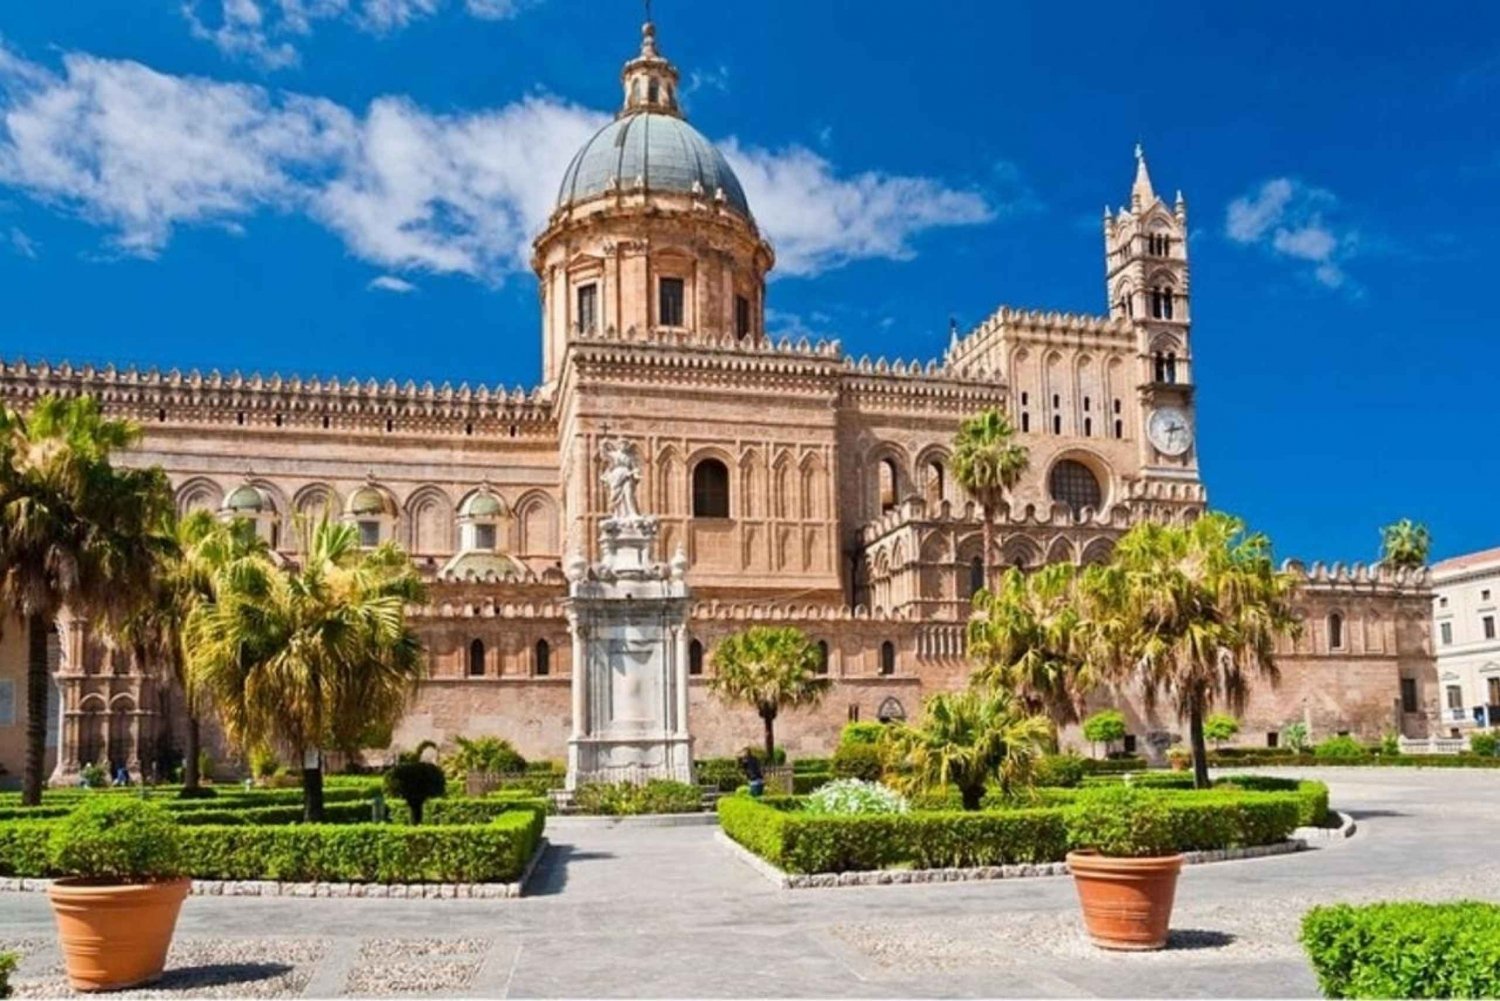 Palermo: excursão a pé pelos mercados históricos e monumentos